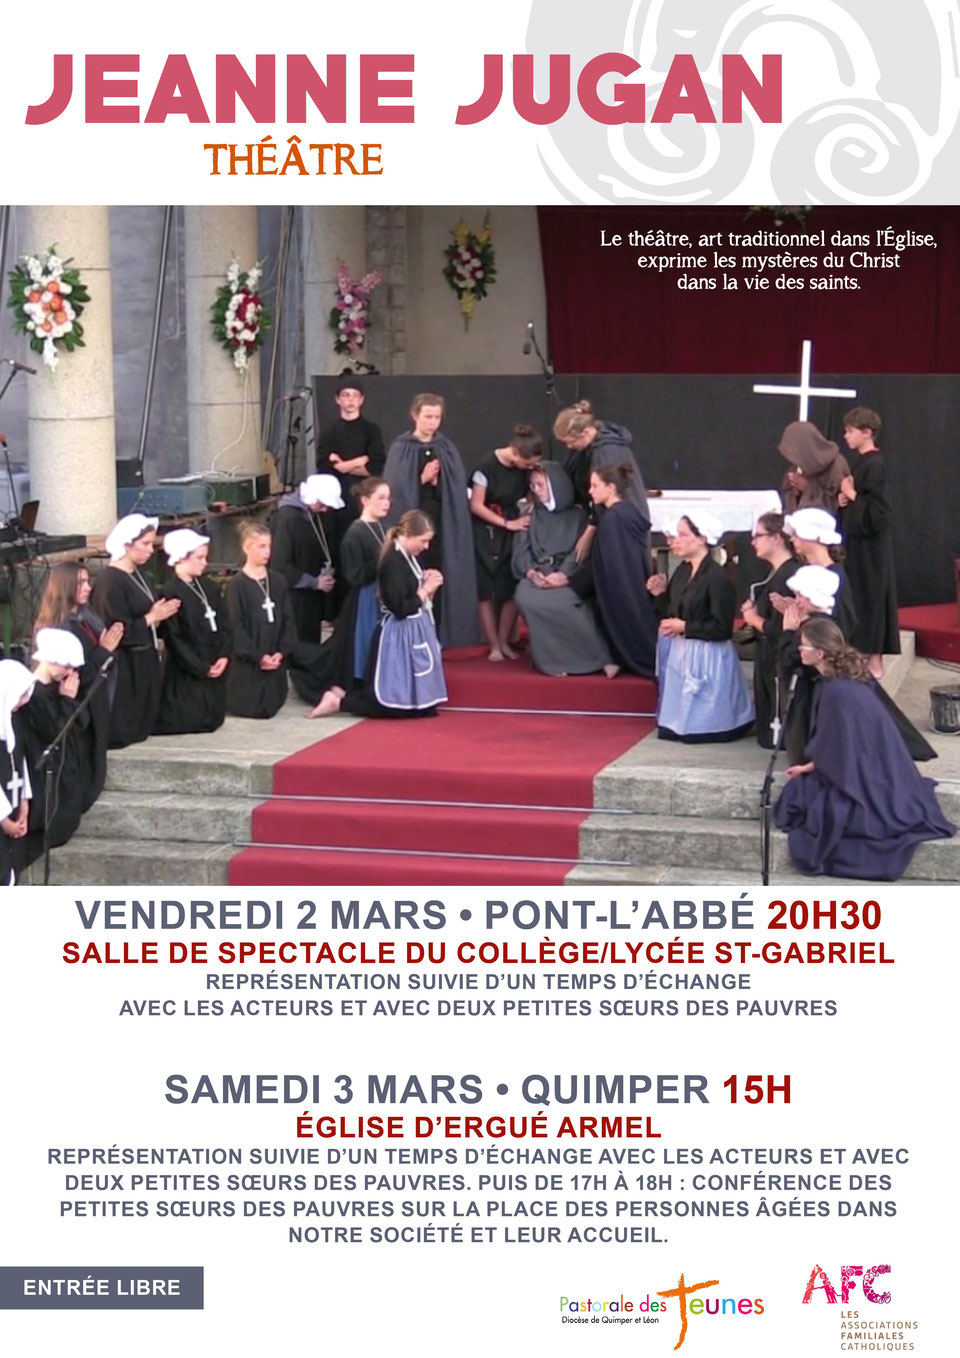 La vie de Sainte Jeanne Jugan dans une pièce de théâtre à Pont-l’Abbé et Quimper (29) les 2 et 3 mars 2018